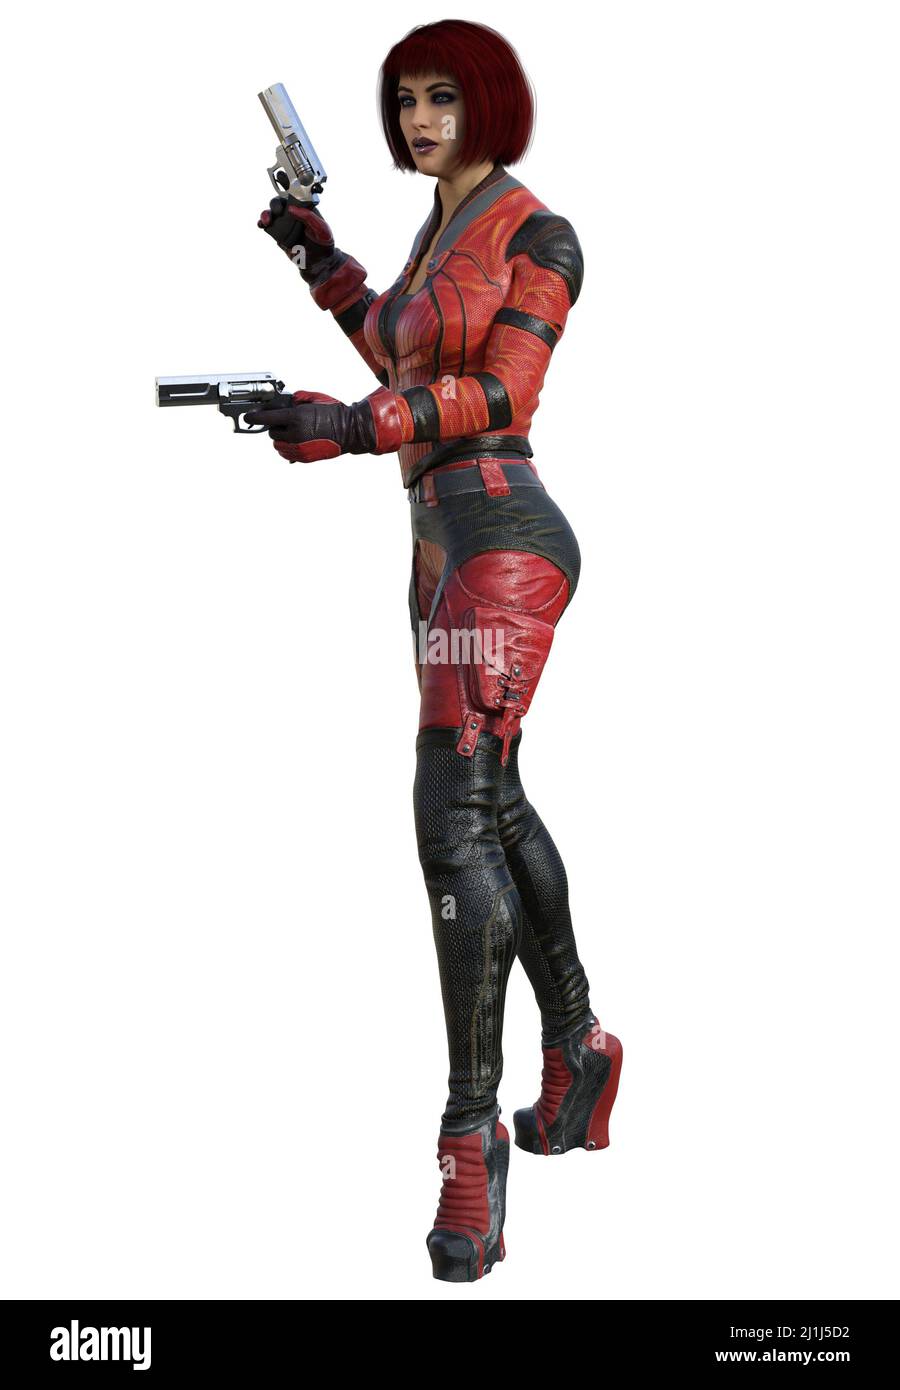 Jeune fille futuriste Warrior avec arme à feu en uniforme rouge, 3D rendu sur fond blanc Banque D'Images